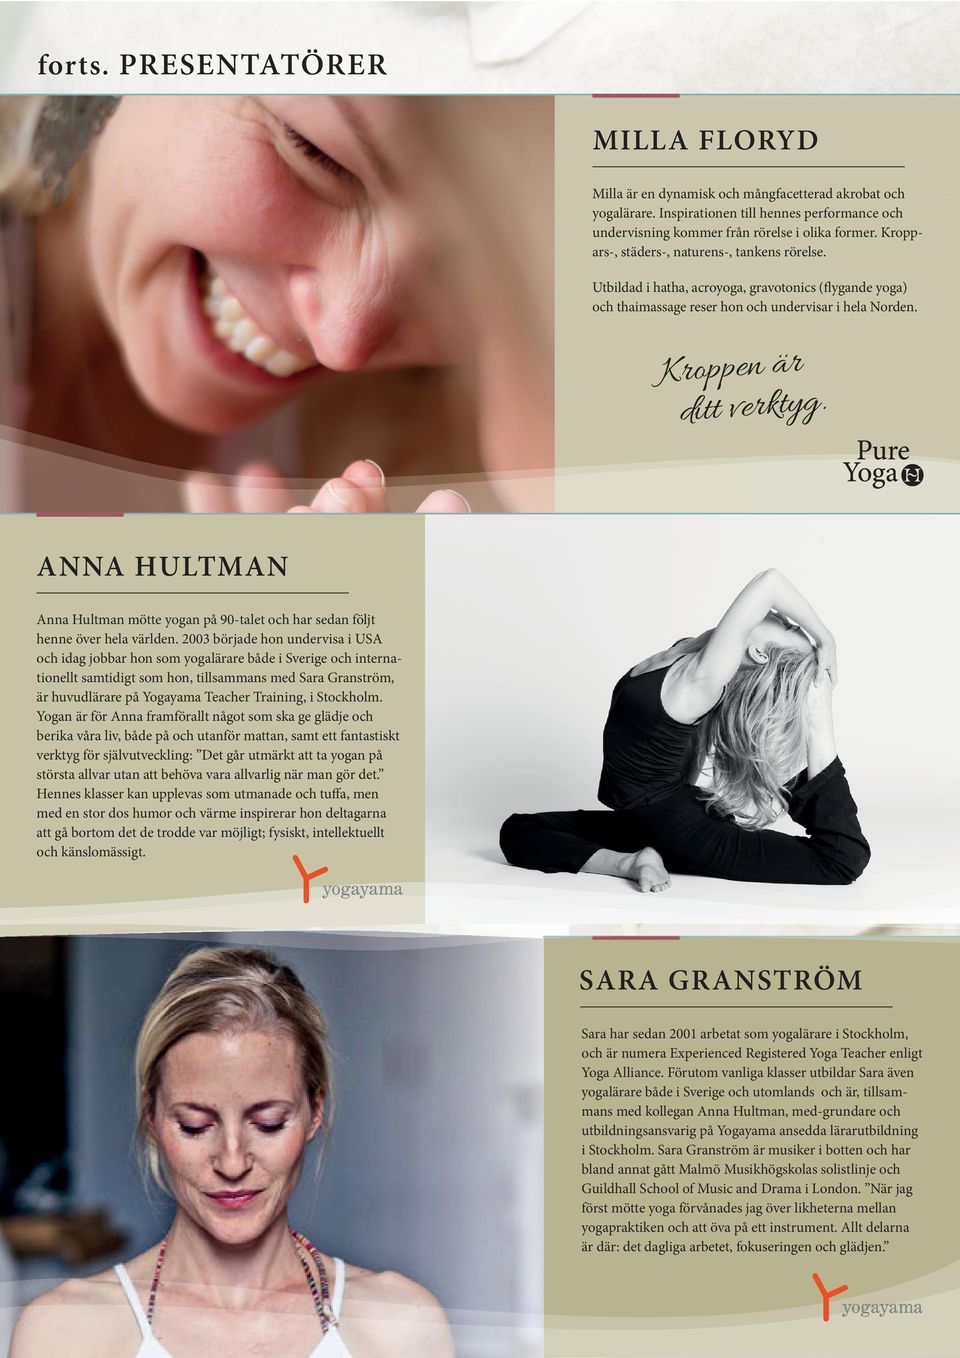 ANNA HULTMAN Anna Hultman mötte yogan på 90-talet och har sedan följt henne över hela världen.